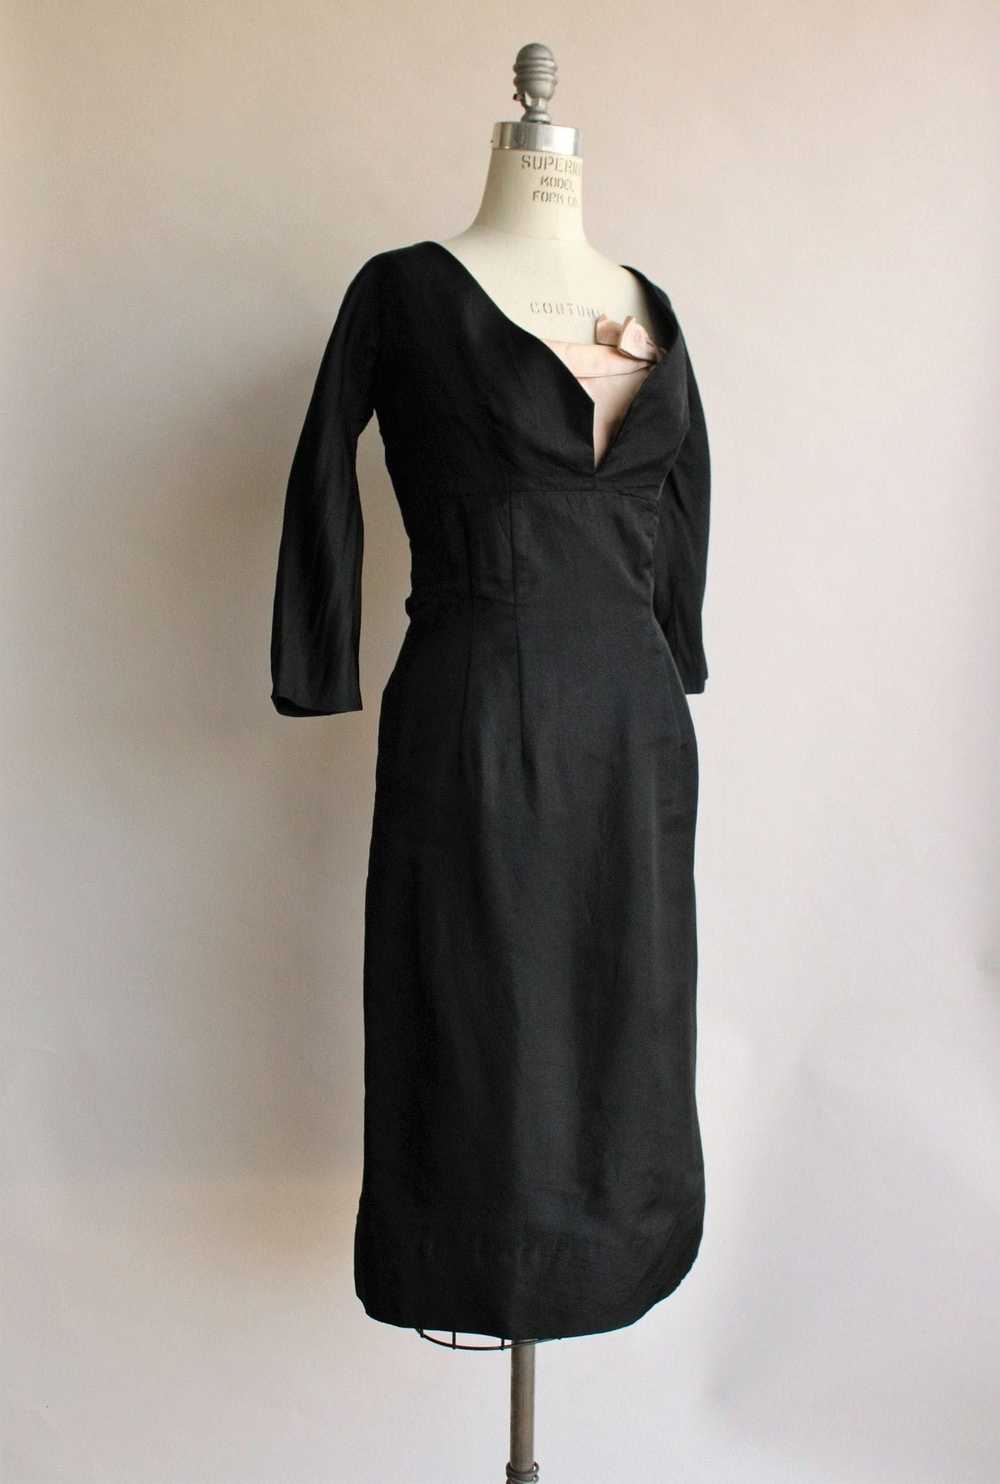 Vintage Vintage 1950s Dress / Black Silk Taffeta … - image 4